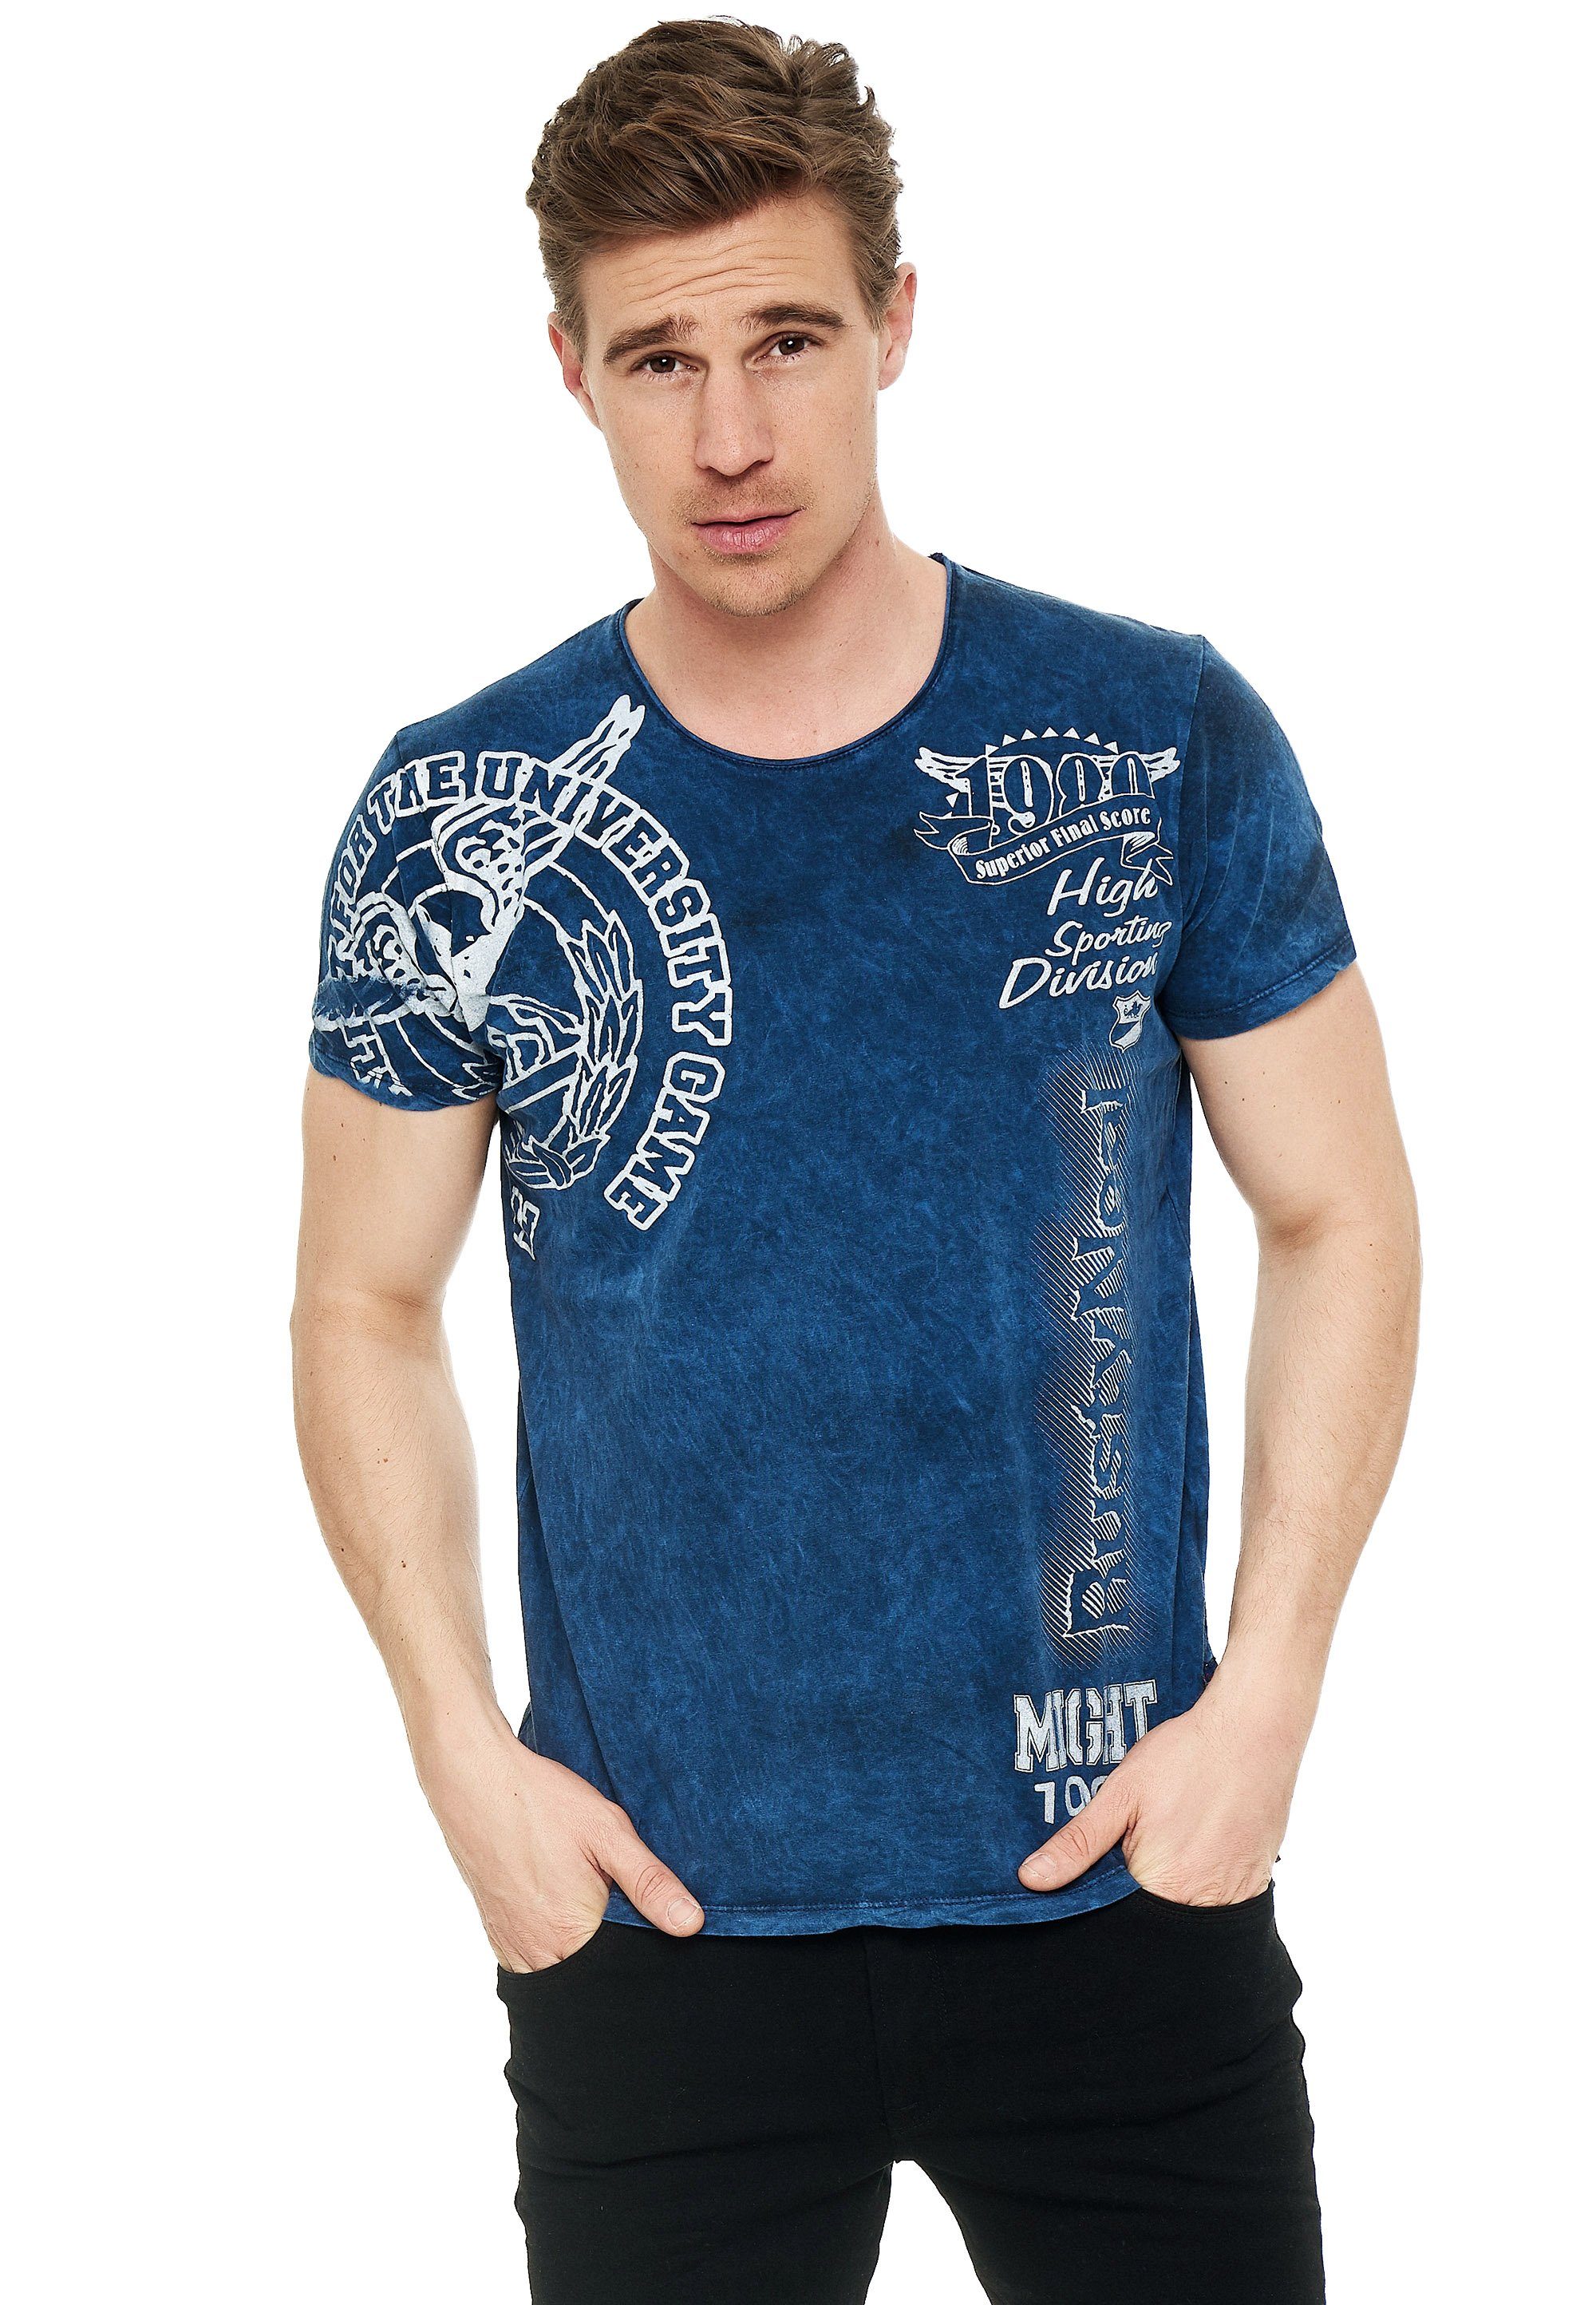 Rusty Neal T-Shirt mit eindrucksvollem Feinstes Print, für angenehmes Tragegefühl Baumwollmaterial